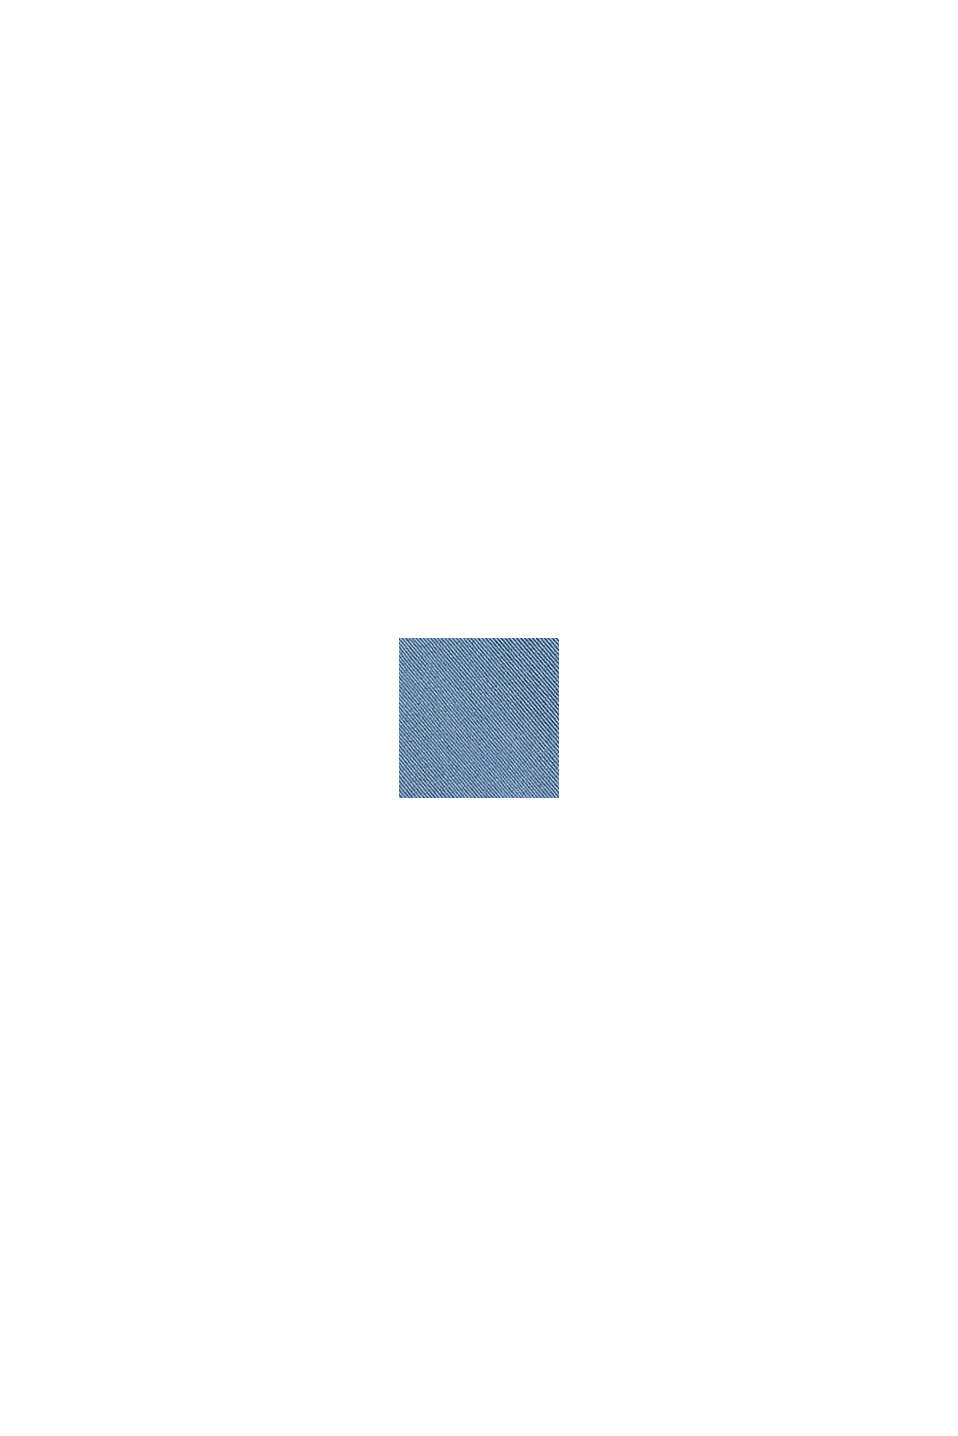 Chino in cotone biologico con anello portachiavi, BLUE, swatch